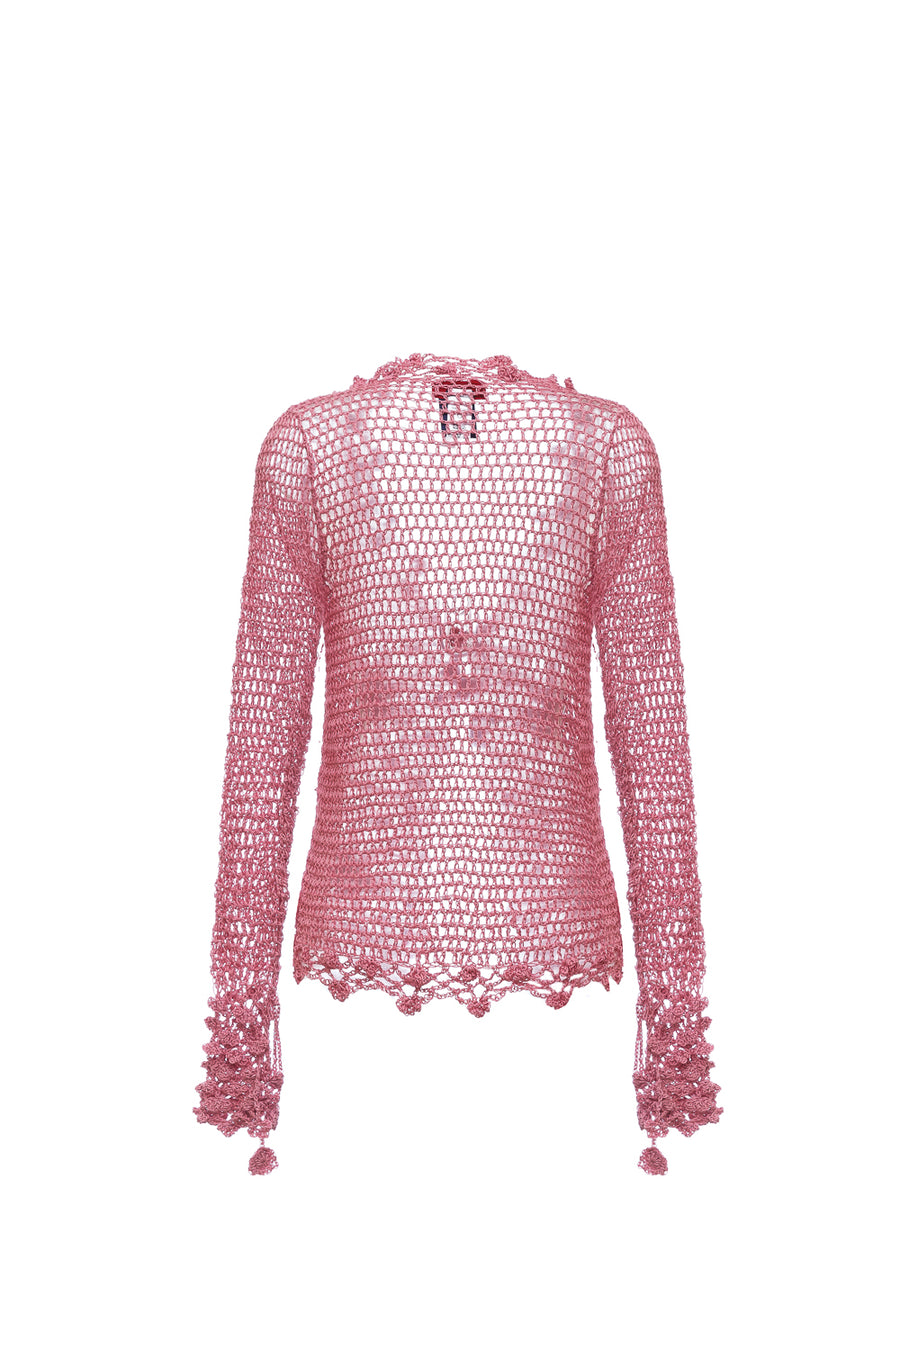 andreeva pink handmade crochet shirt